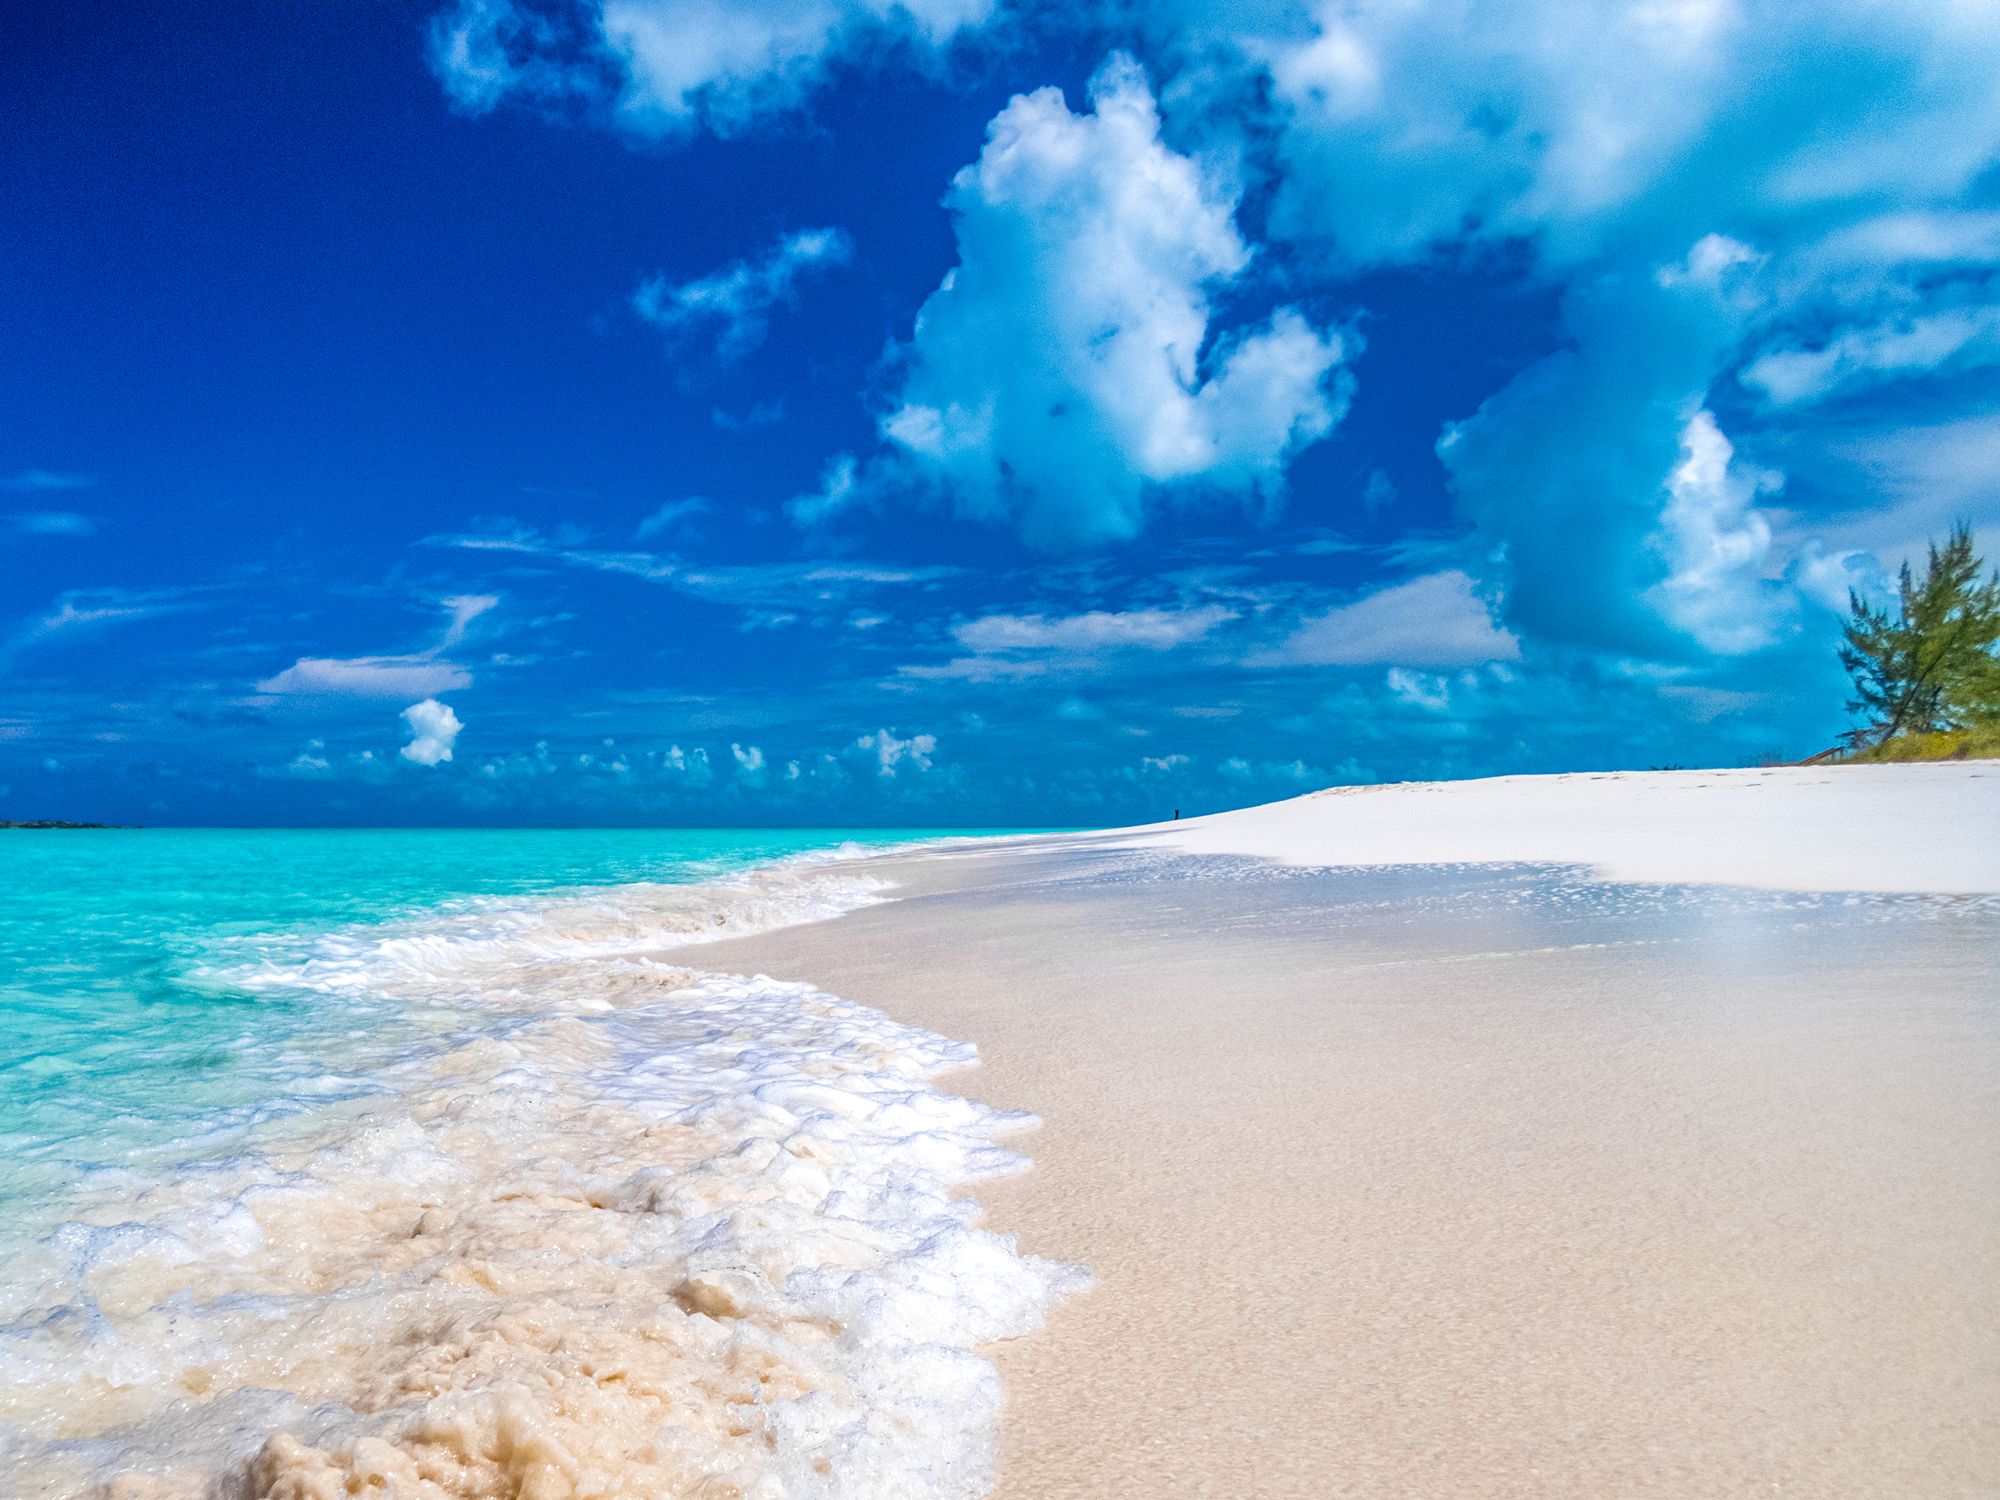 Tropic of cancer beach Little Exuma Bahamas